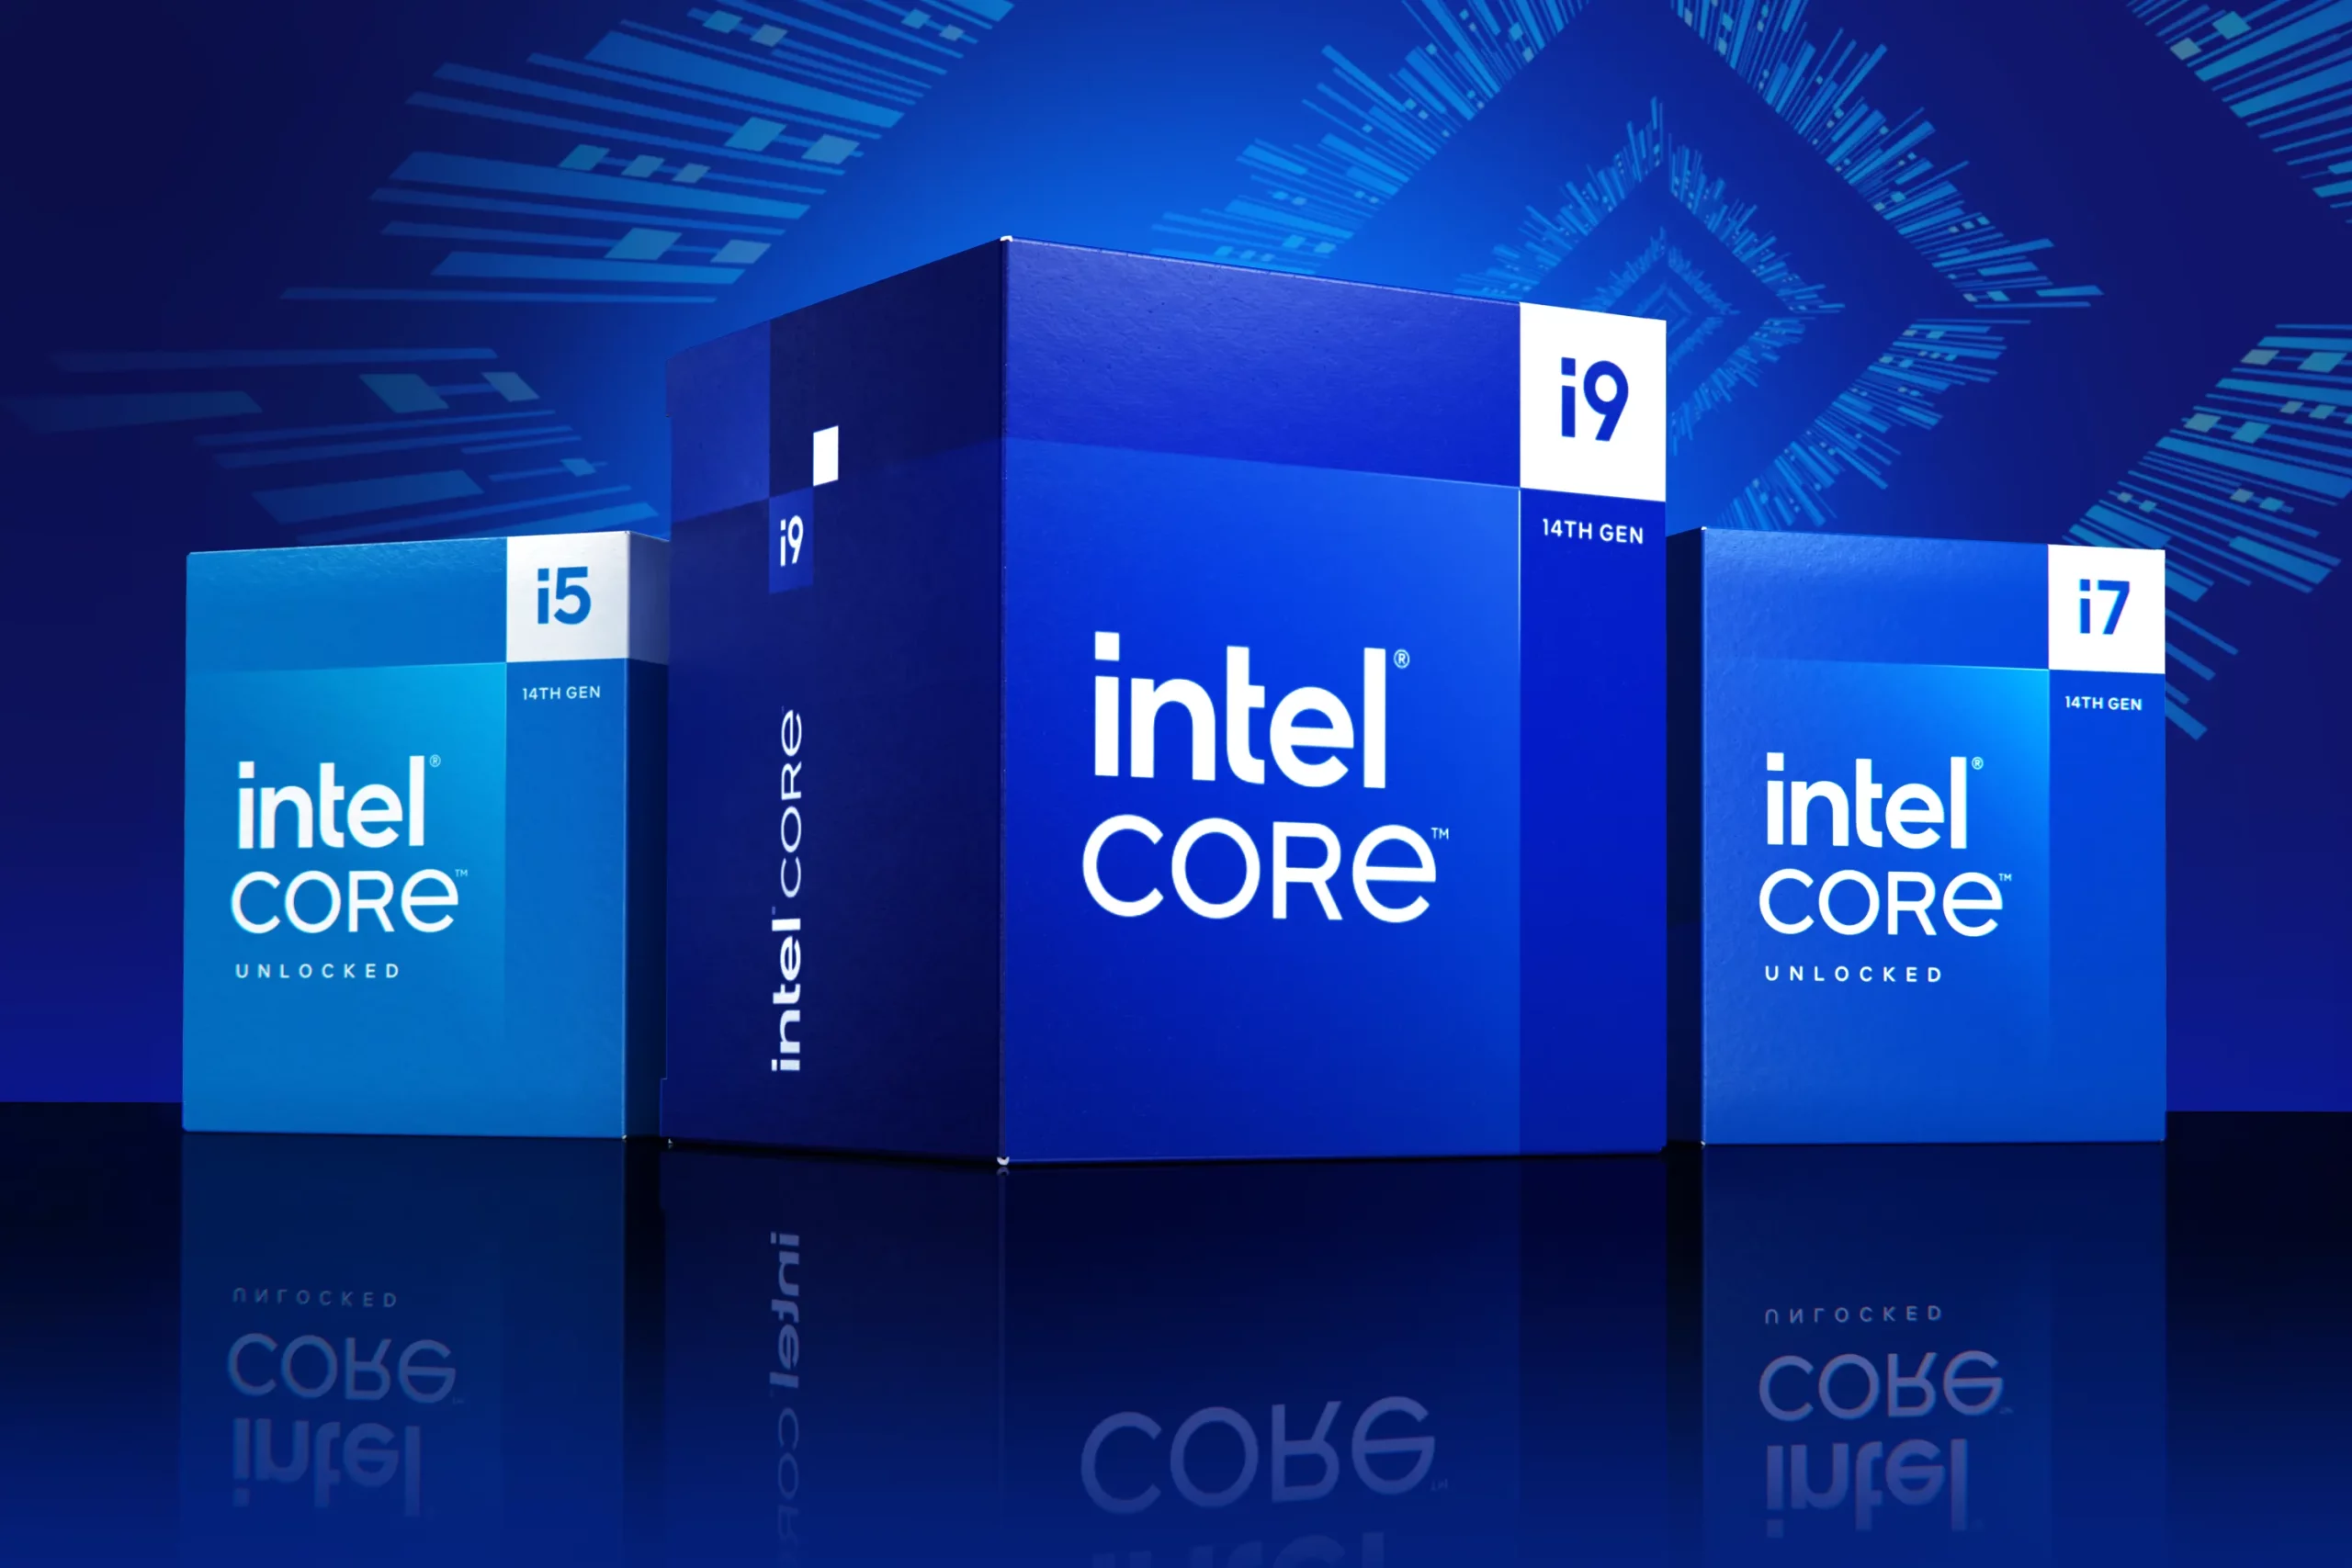 จับตามอง!! ผลการทดสอบ Intel Core i9-14900KS เร็วสูงถึง 6.2GHz